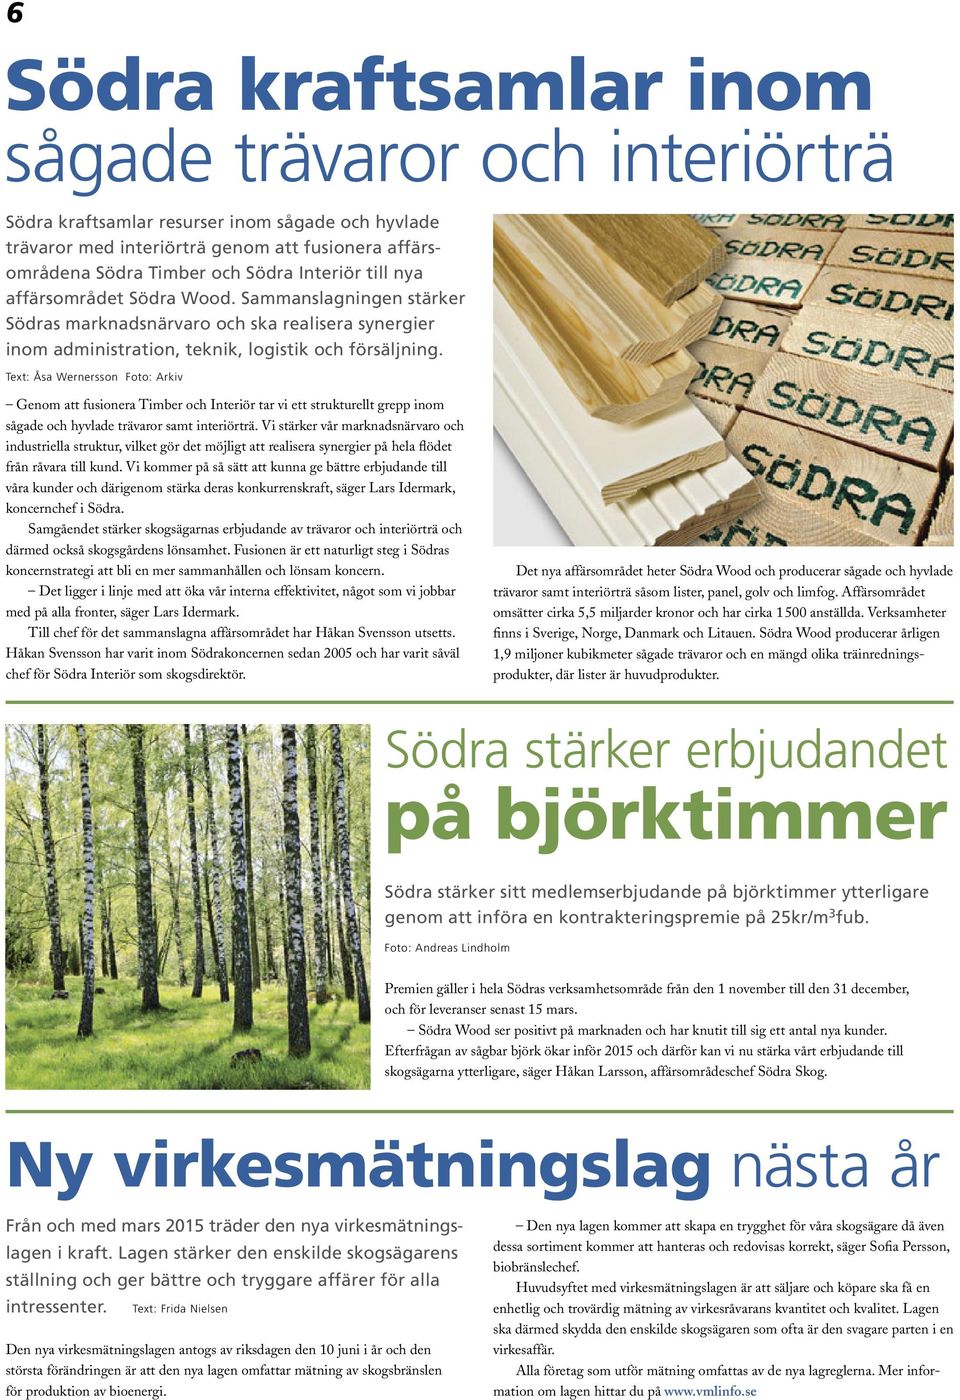 Text: Åsa Wernersson Foto: Arkiv Genom att fusionera Timber och Interiör tar vi ett strukturellt grepp inom sågade och hyvlade trävaror samt interiörträ.